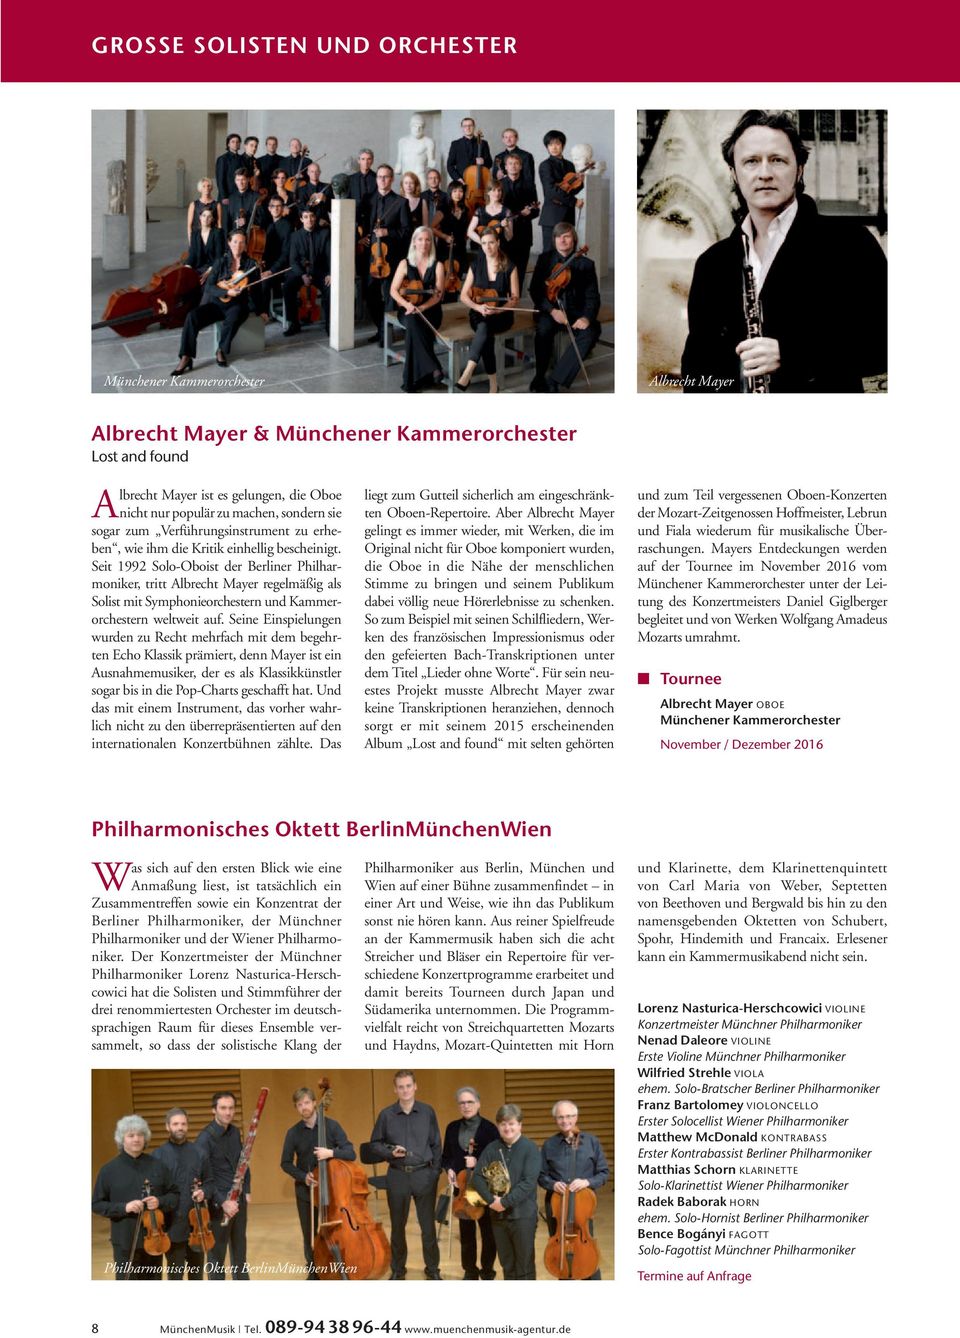 Seit 1992 Solo-Oboist der Berliner Philharmoniker, tritt Albrecht Mayer regelmäßig als Solist mit Symphonieorchestern und Kammerorchestern weltweit auf.